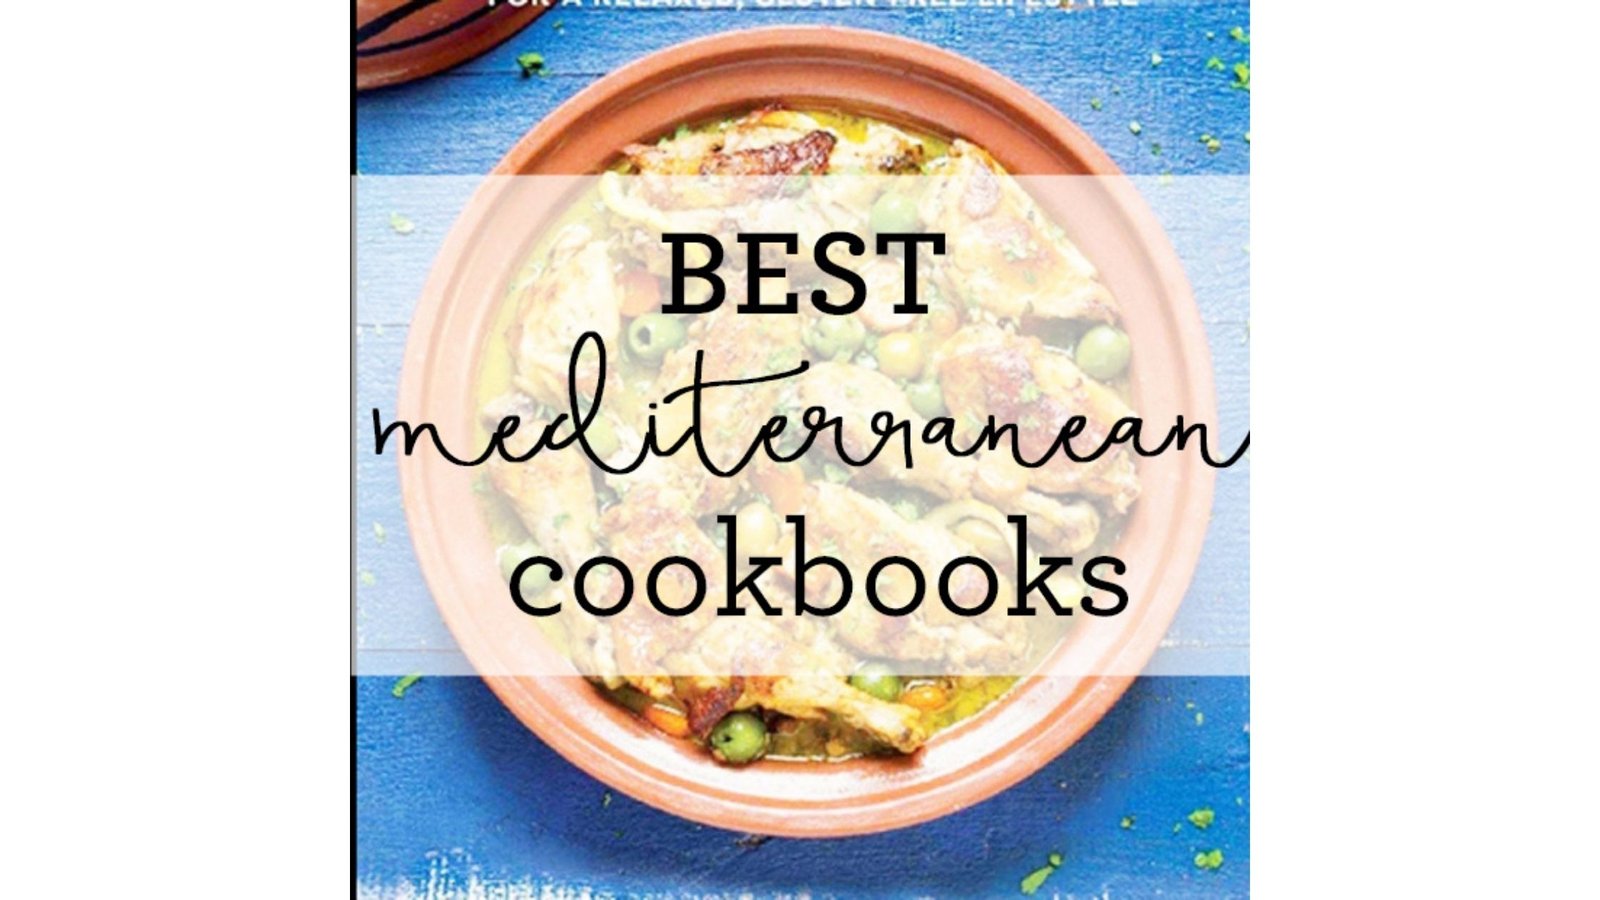 Best-Mediterranean-Diet-Cookbooks-To-Read-1